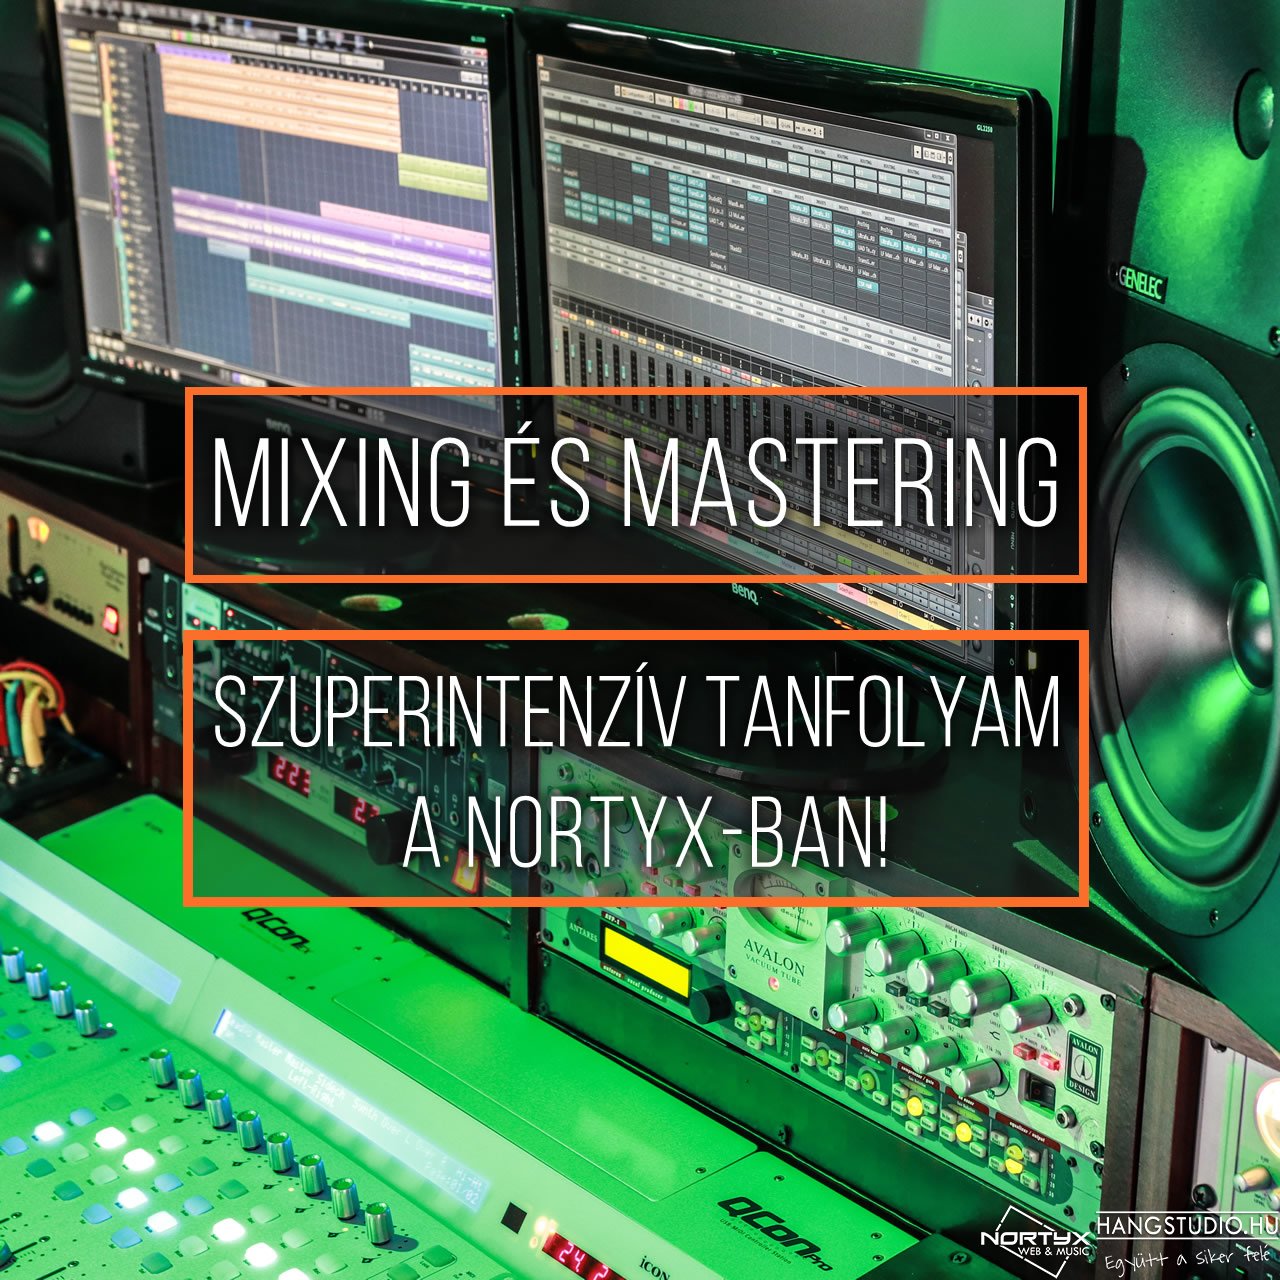 Mixing és mastering tanfolyamot indítunk a Nortyx-ban!